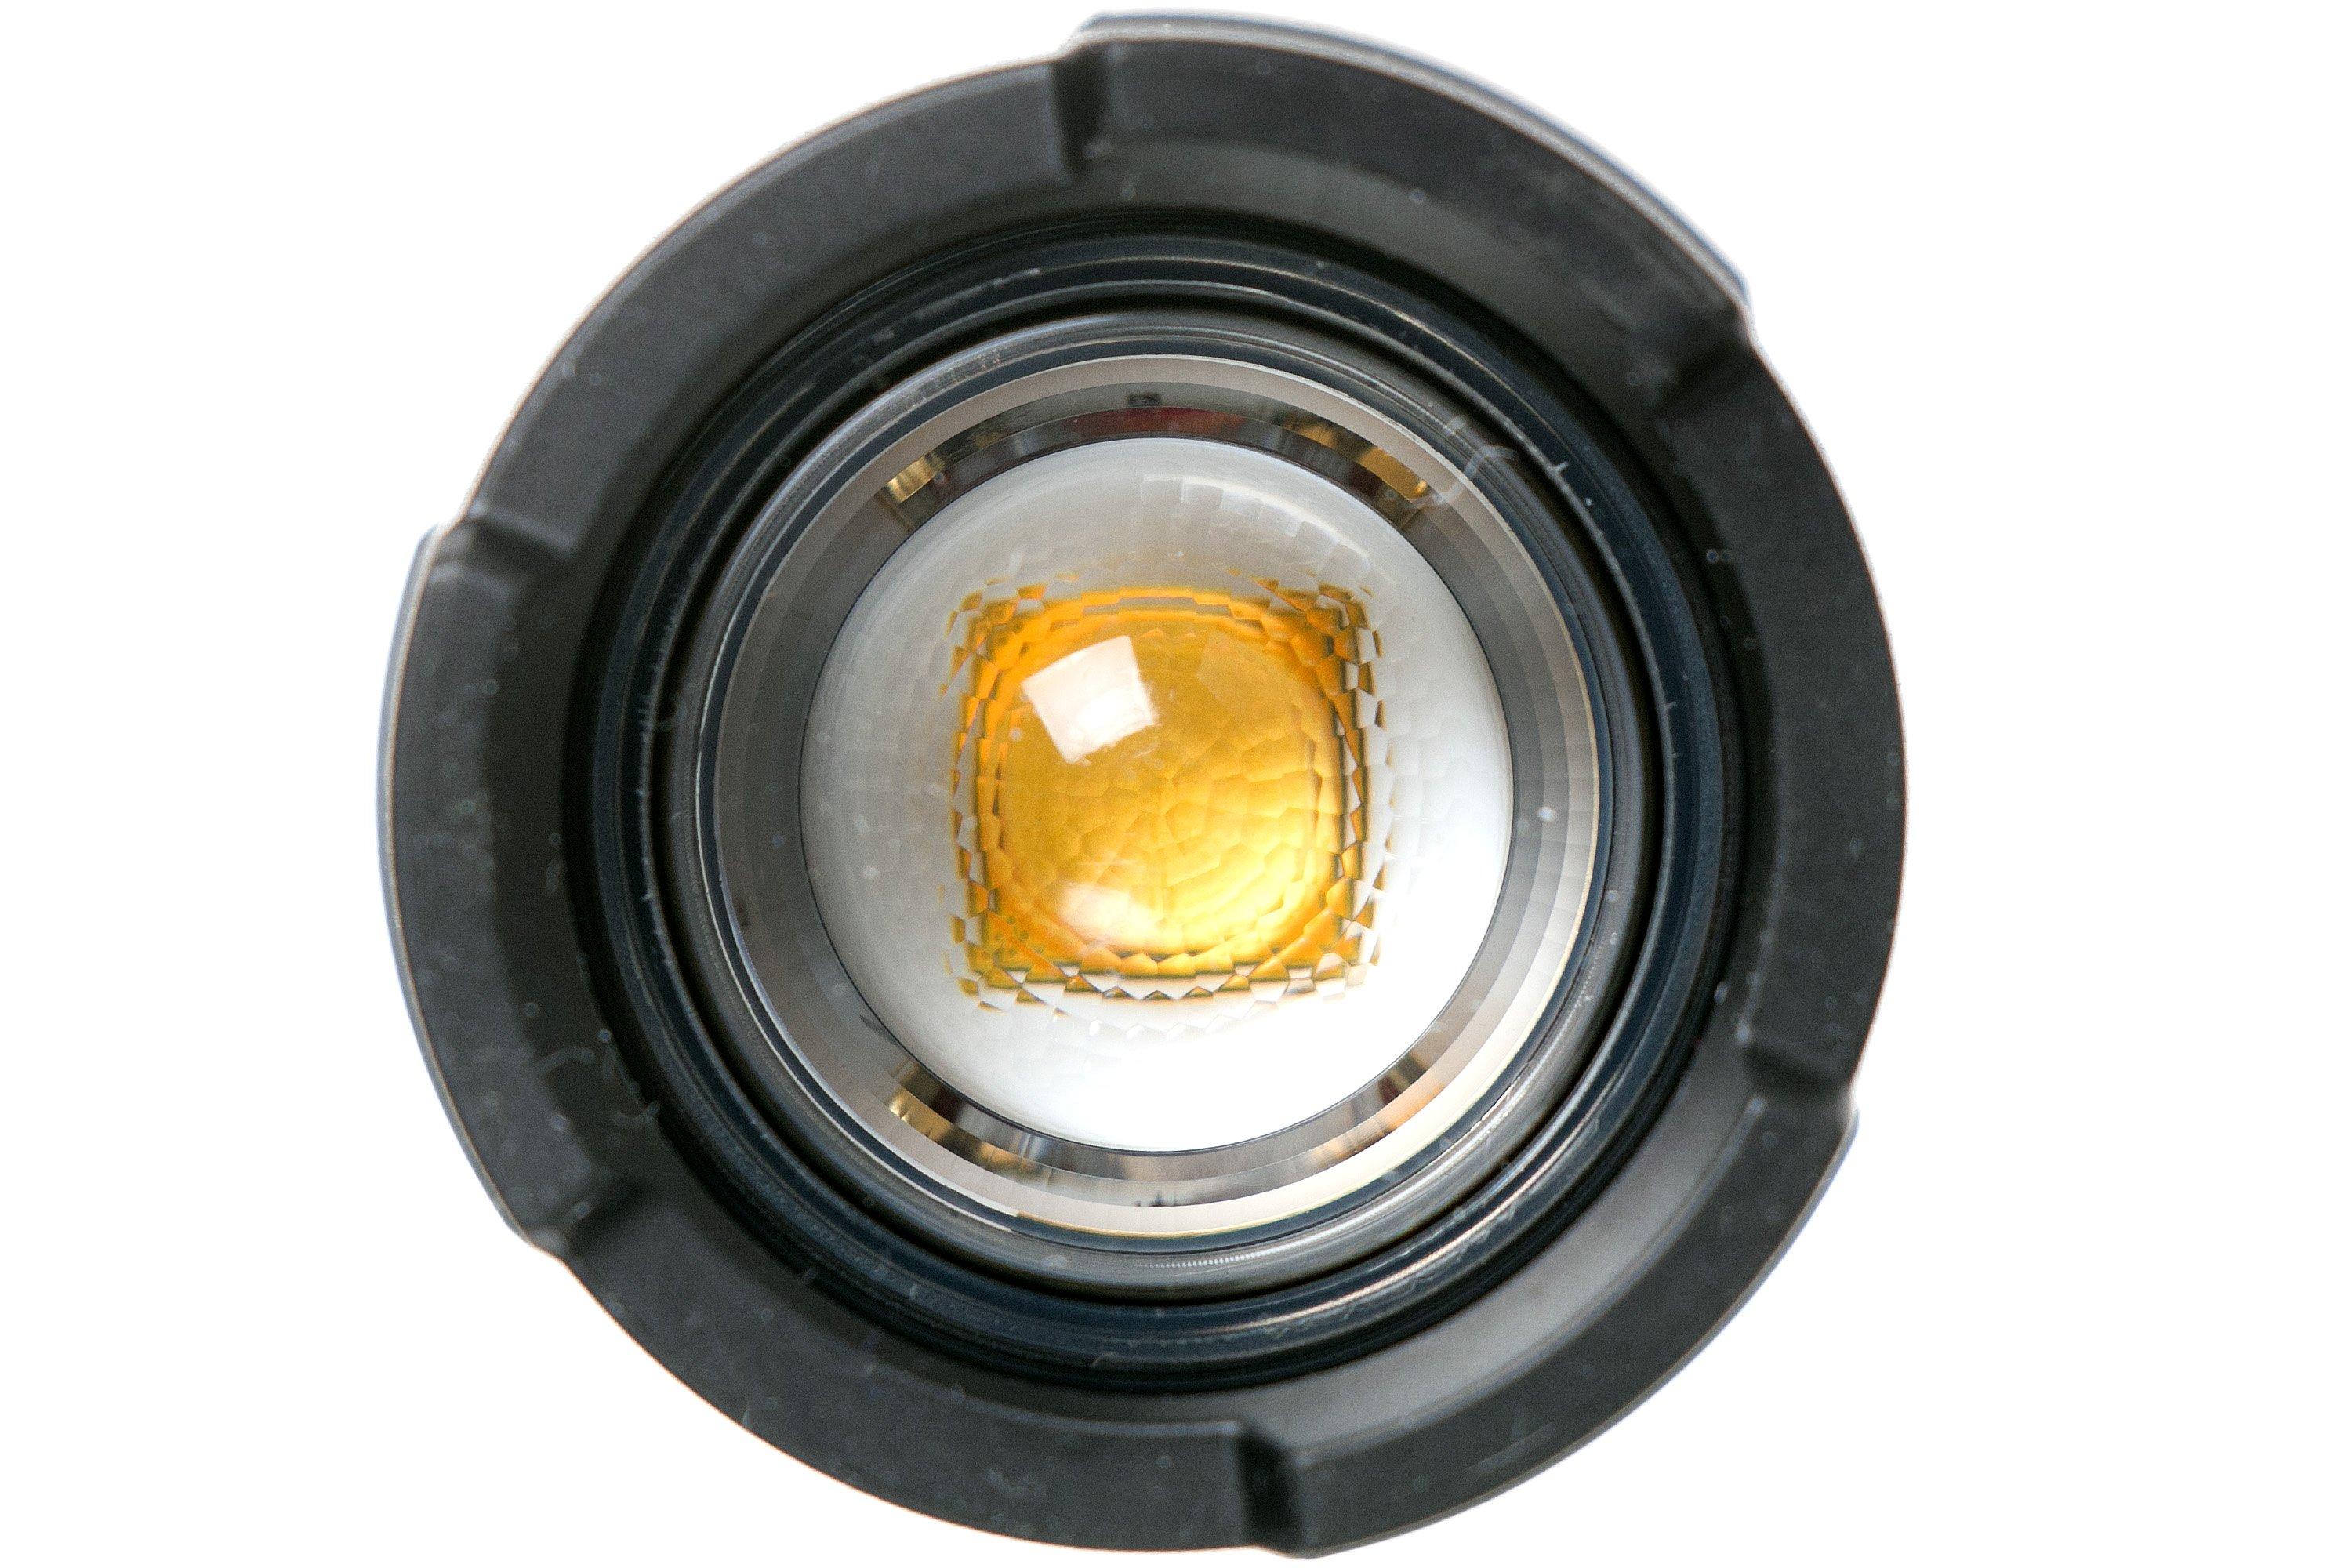 Linterna LED recargable LedLenser P7R Work. venta online de linternas